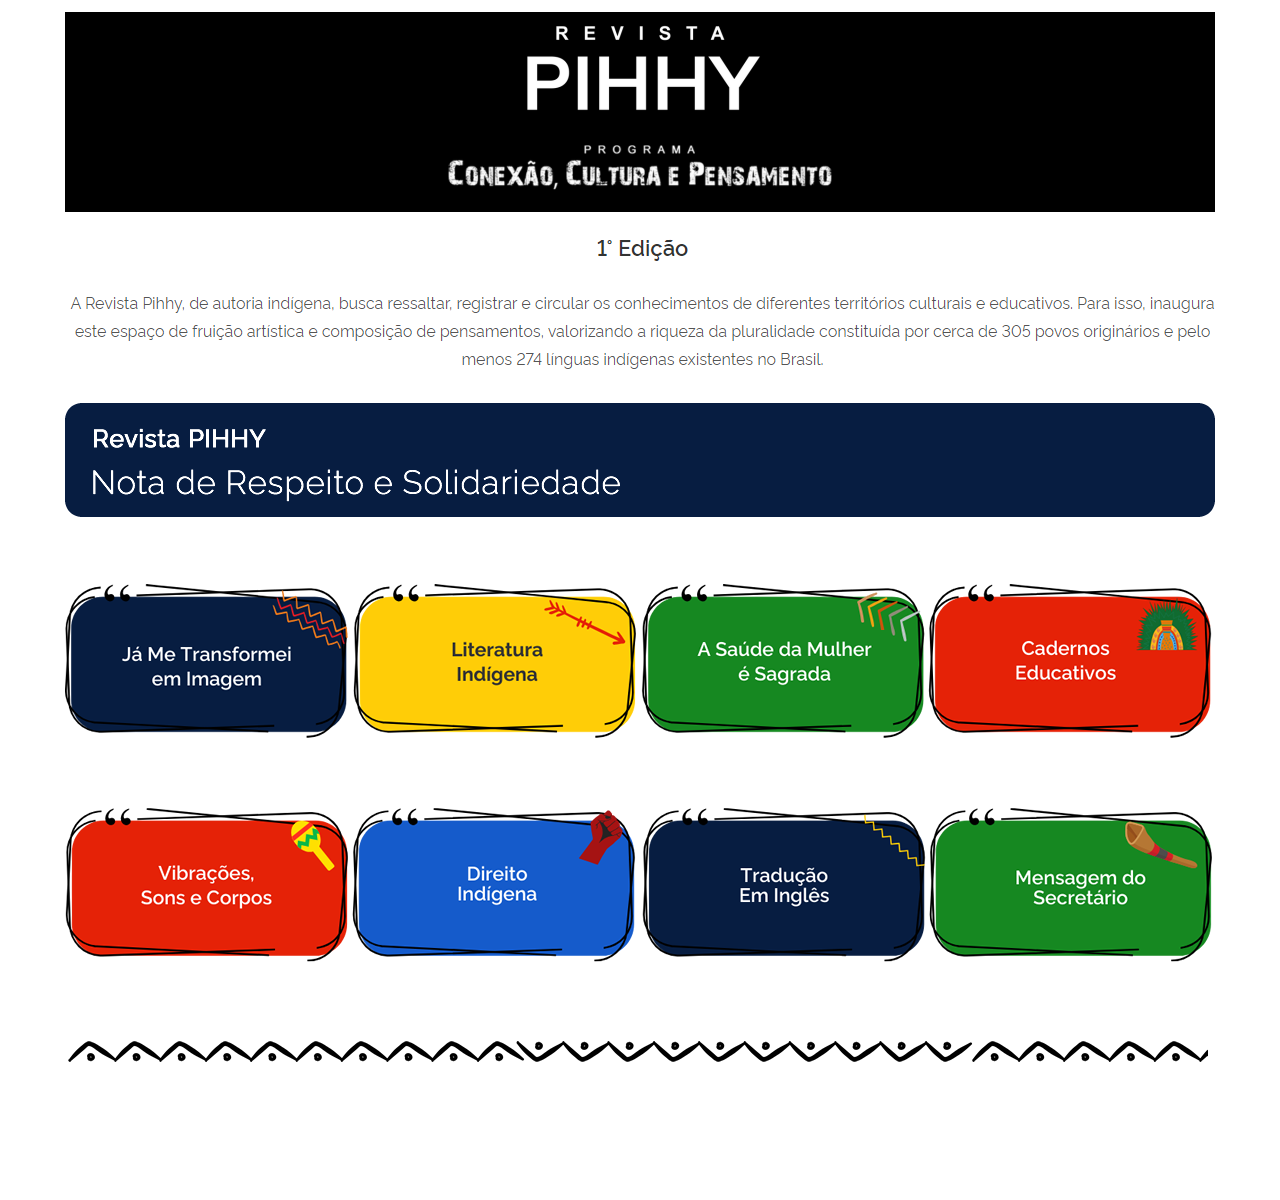 Pihhy-1 - Cards de categorias 22 Pihhy-1 - Cards de categorias